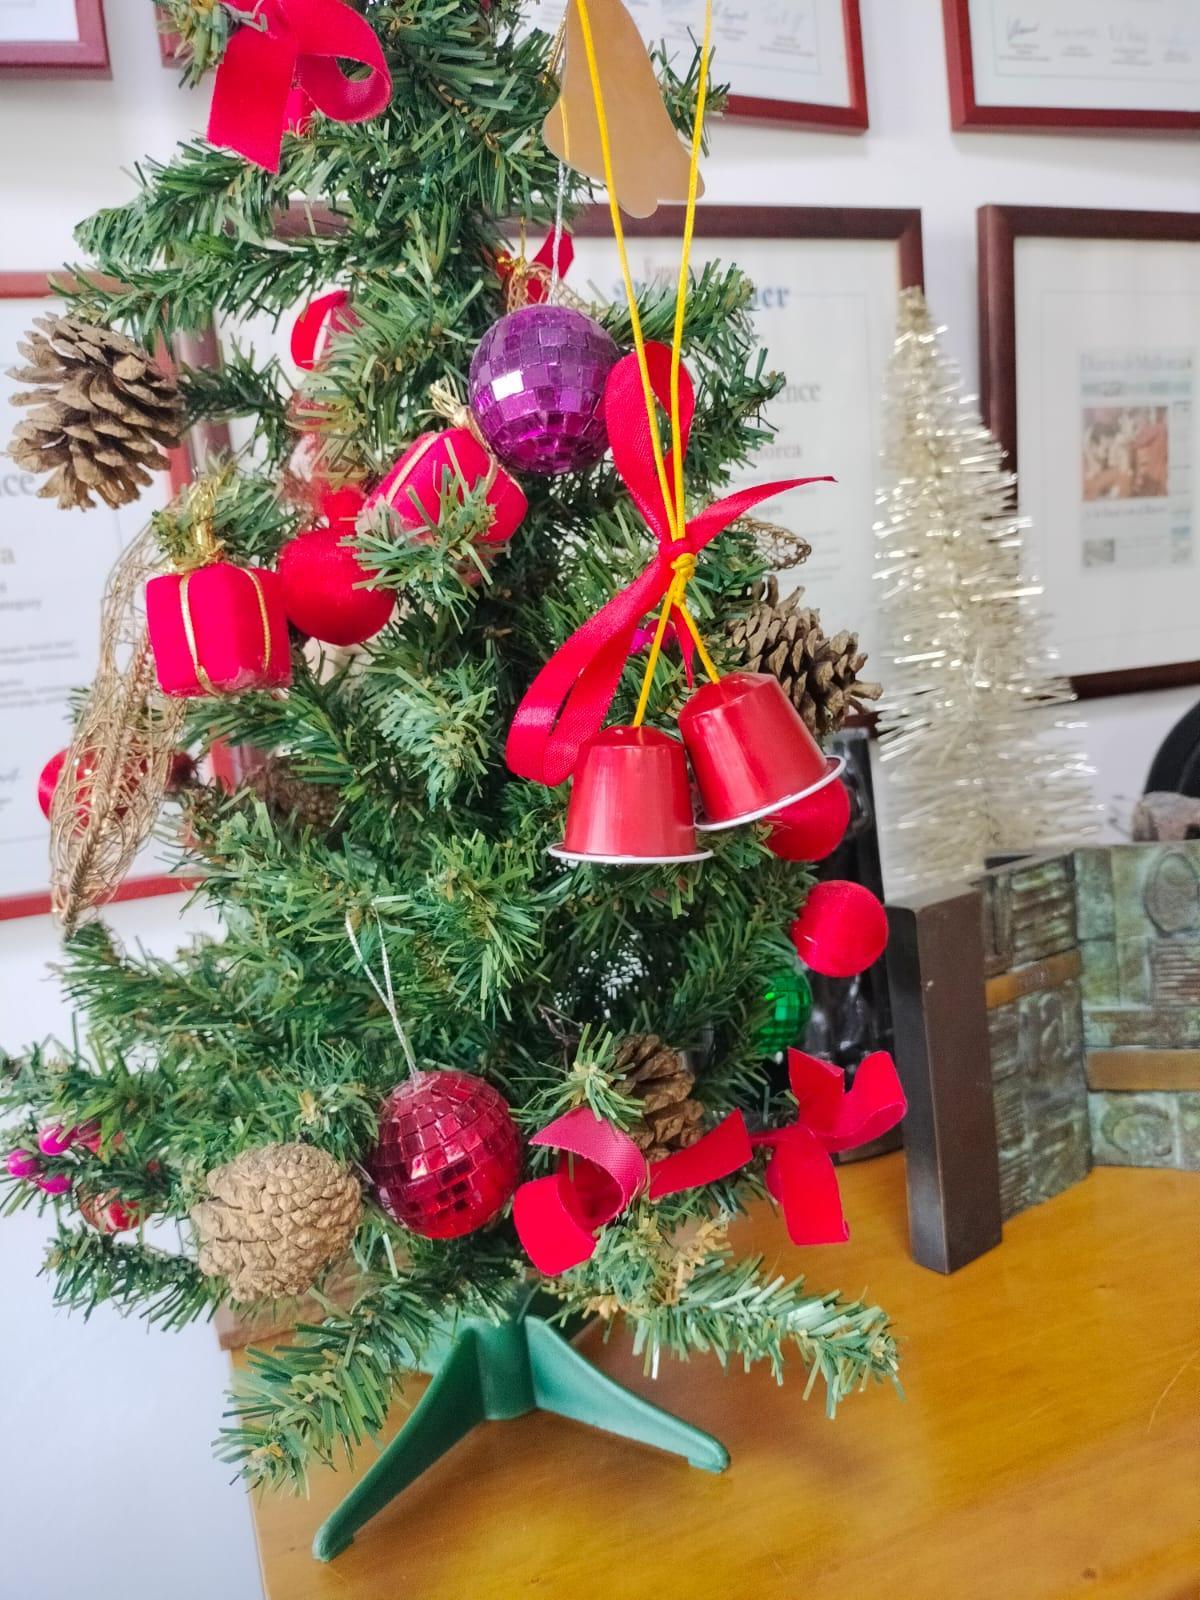 Con este producto, hechos campanitas, se pueden decorar los árboles de navidad